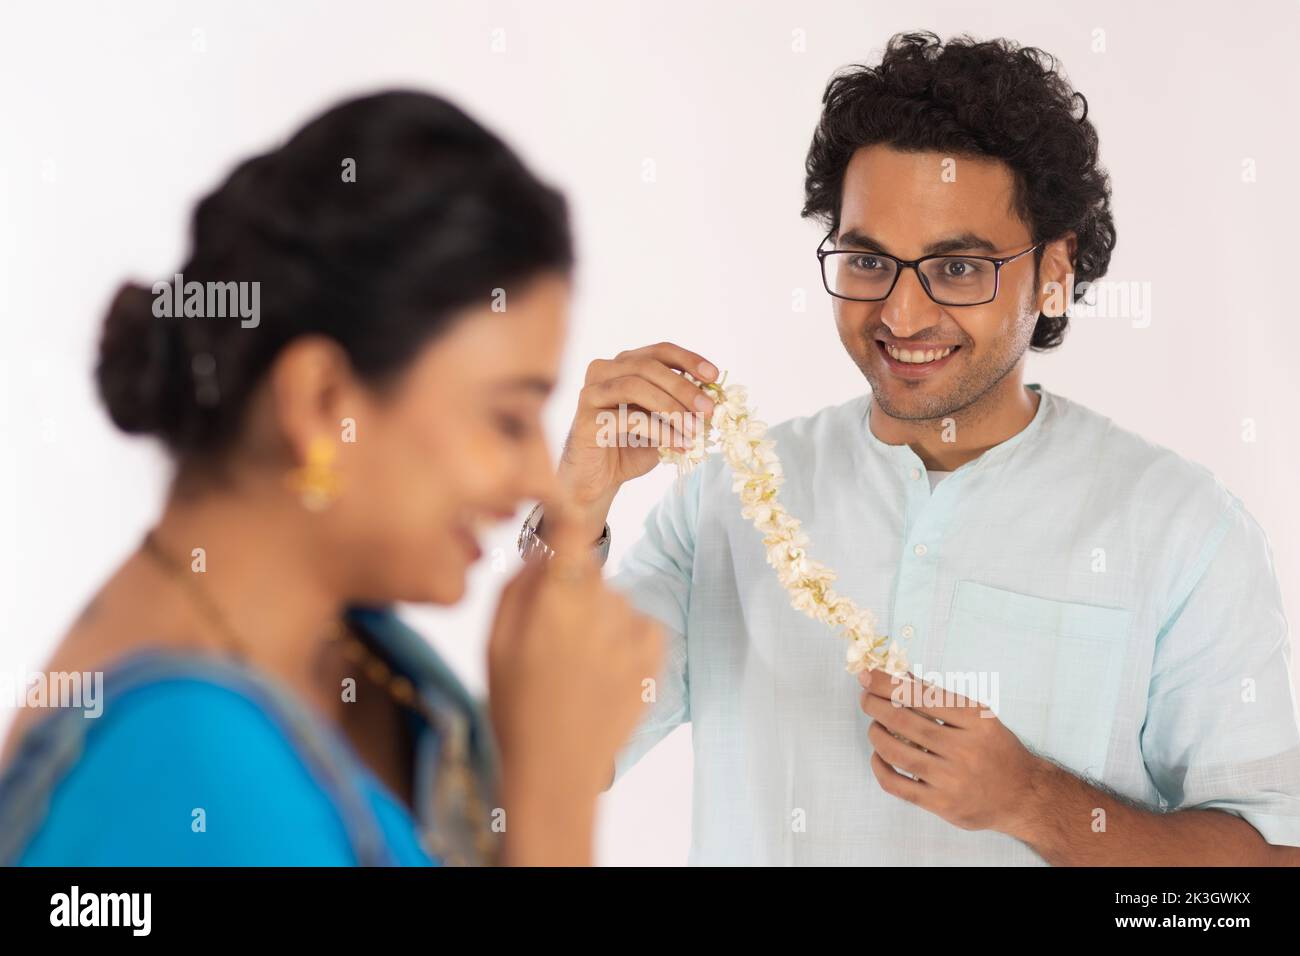 Retrato del joven bengalí sosteniendo una guirnalda de flores Foto de stock